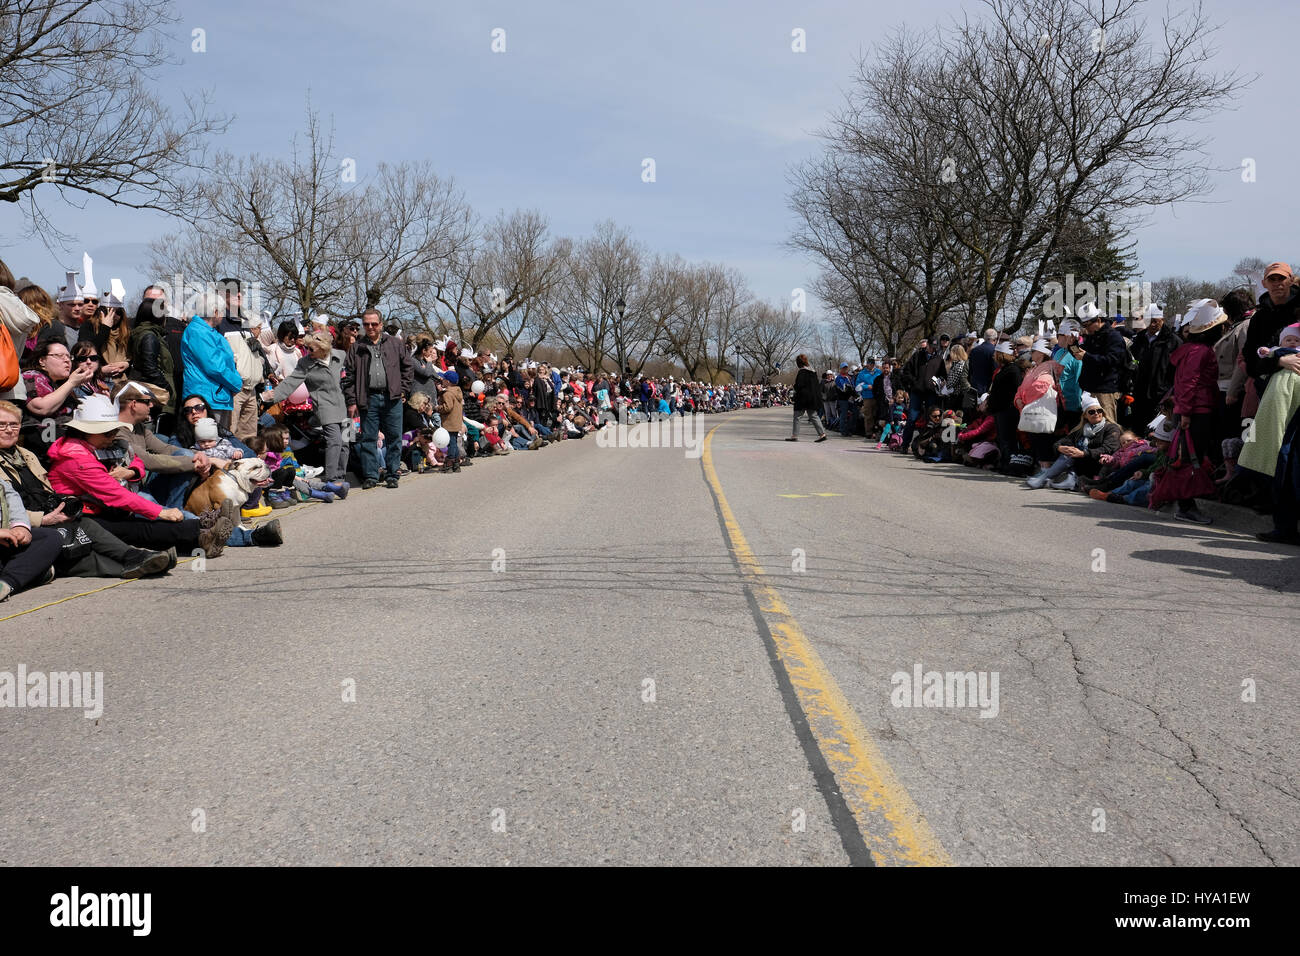 Stratford, Ontario, Kanada, 2. April 2017. Tausende von Menschen versammeln sich zum der Stratford jährliche Swan-Parade, wenn die Stadt Schwäne zum Fluss Avon in der Feier der Ankunft des Frühlings zurück. Bildnachweis: Rubens Alarcon/Alamy Live-Nachrichten. Stockfoto